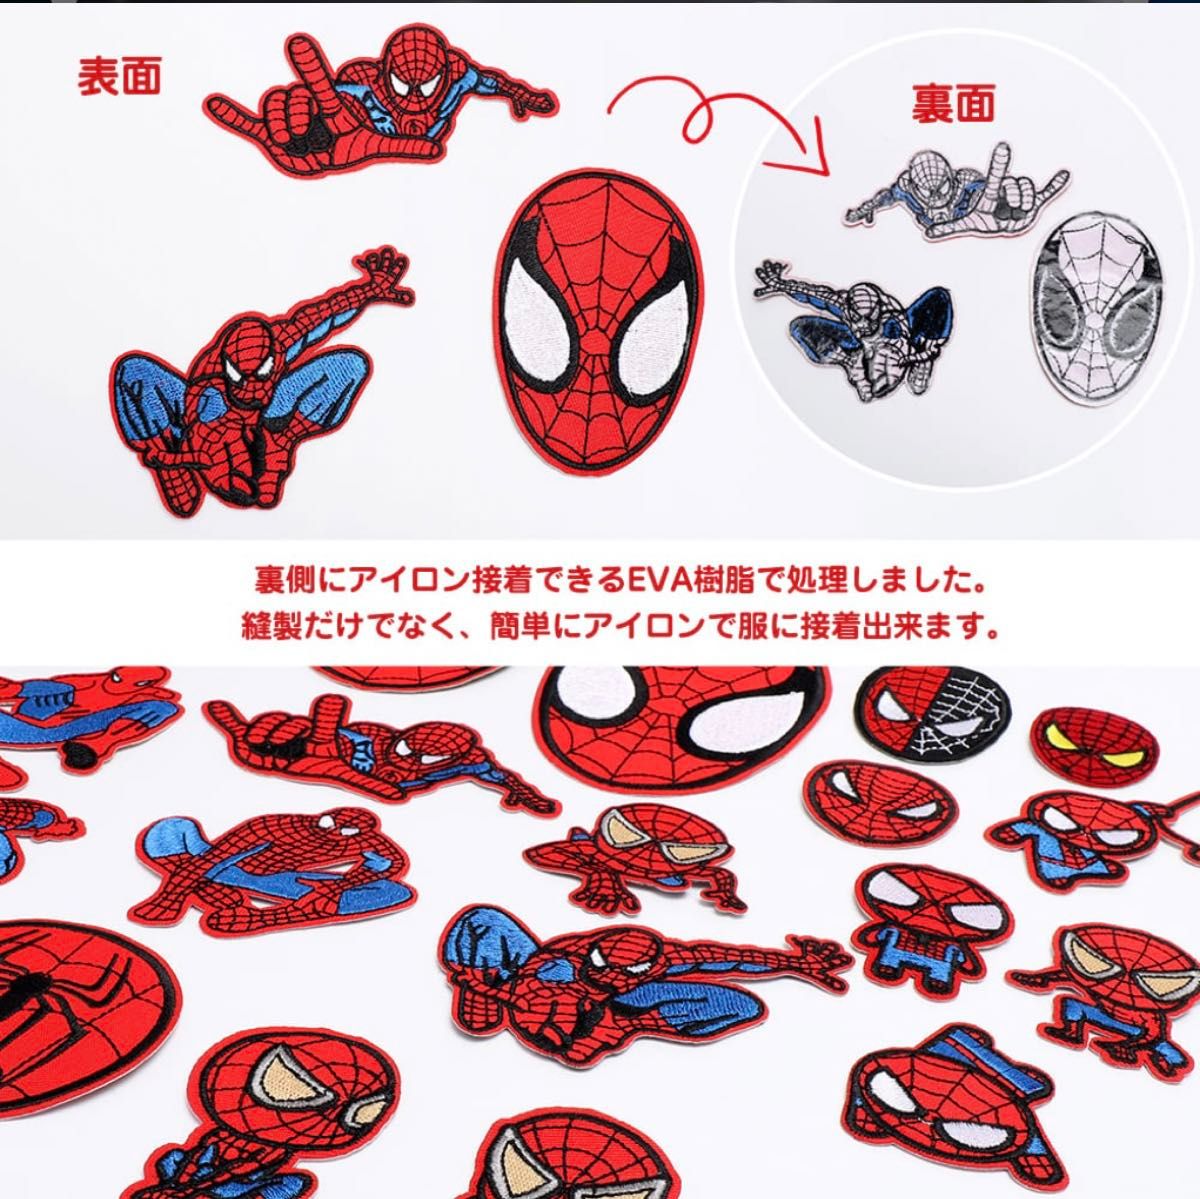 ワッペン スパイダーマン ミニ アイロン 20枚セット アイロン接着 おしゃれ かわいい 刺繍 キャラクター マーク 